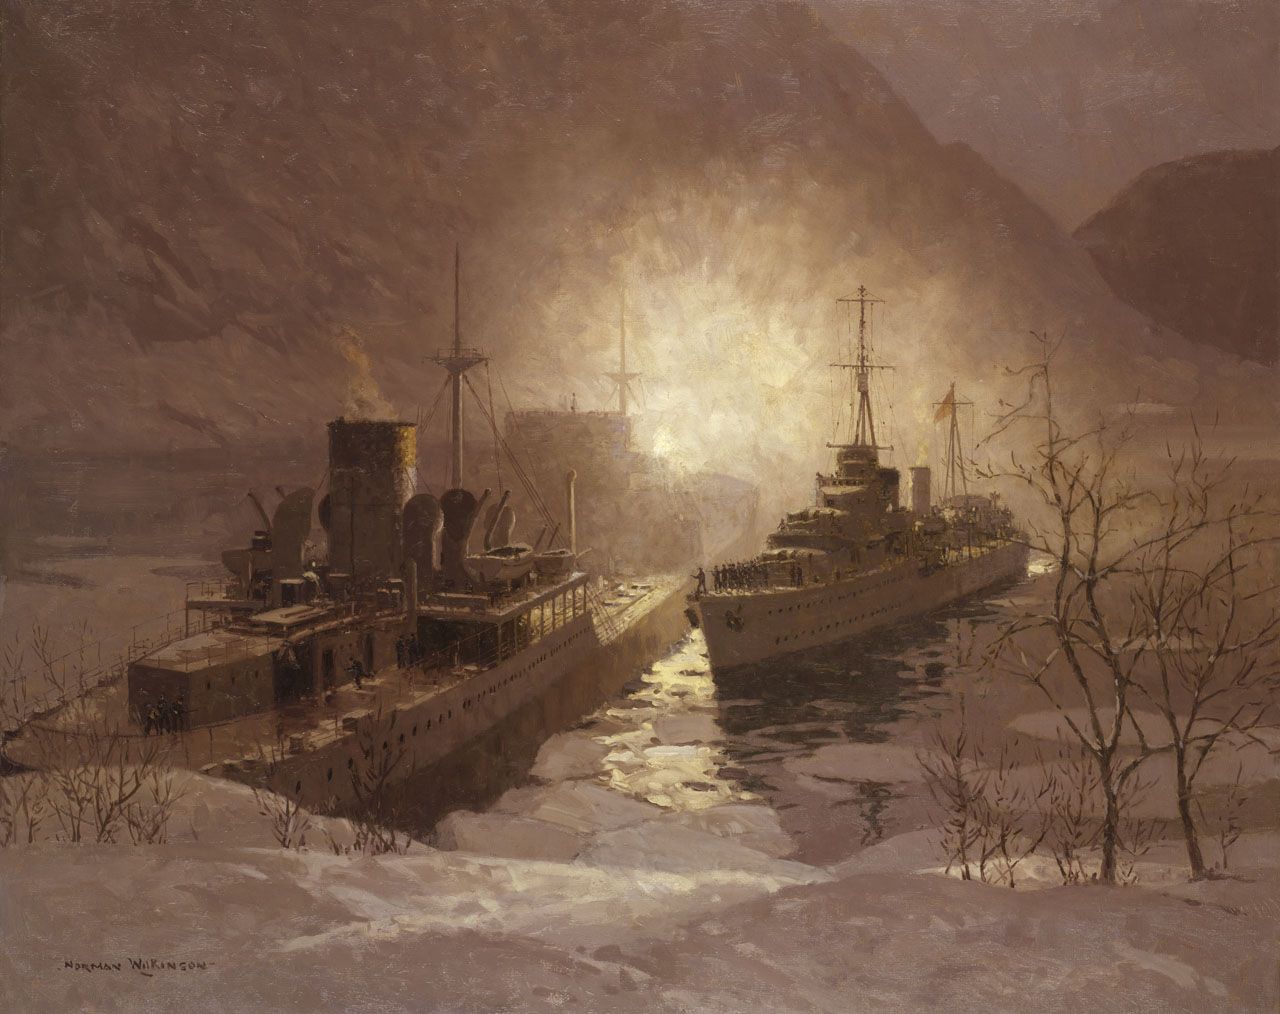 HMS Cossack attacks the MV Altmark I